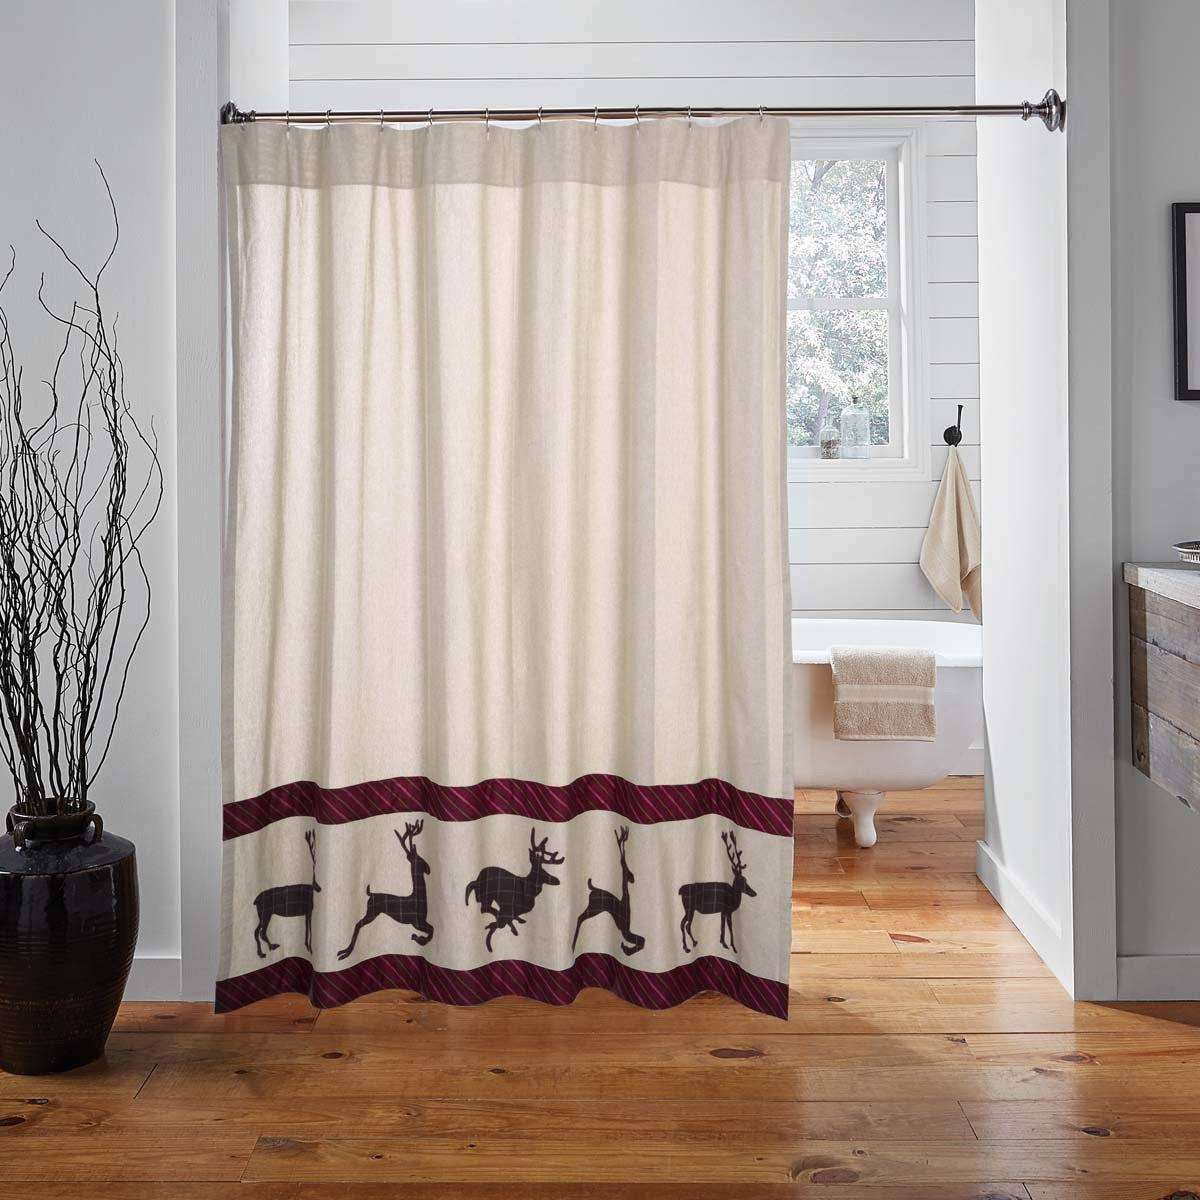 Wyatt Deer Shower Curtain 72"x72" curtain VHC Brands 